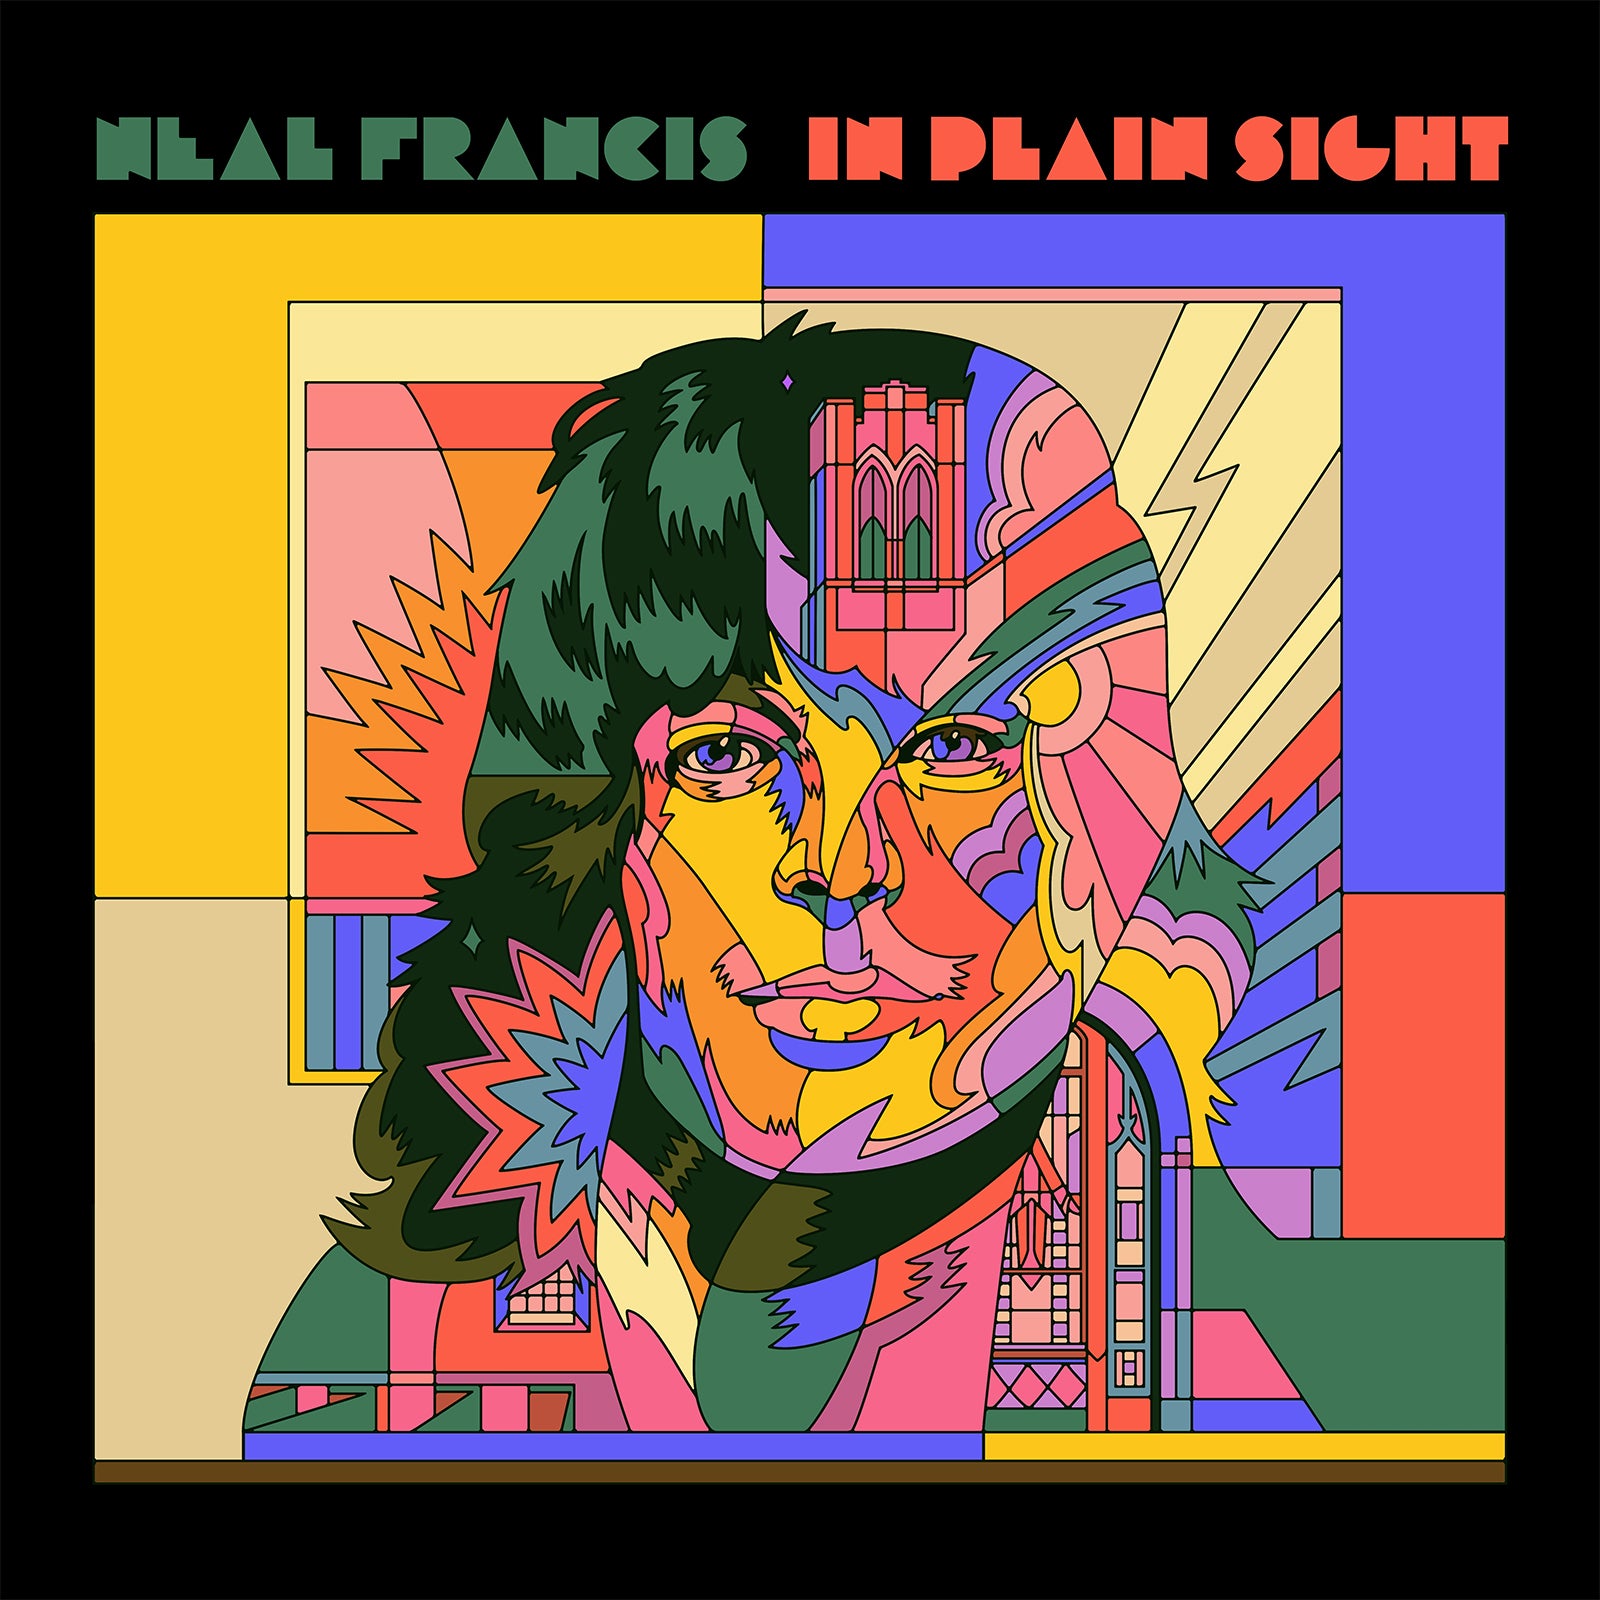 Neal Francis - In Plain Sight [Coke Bottle Clear Vinyl]